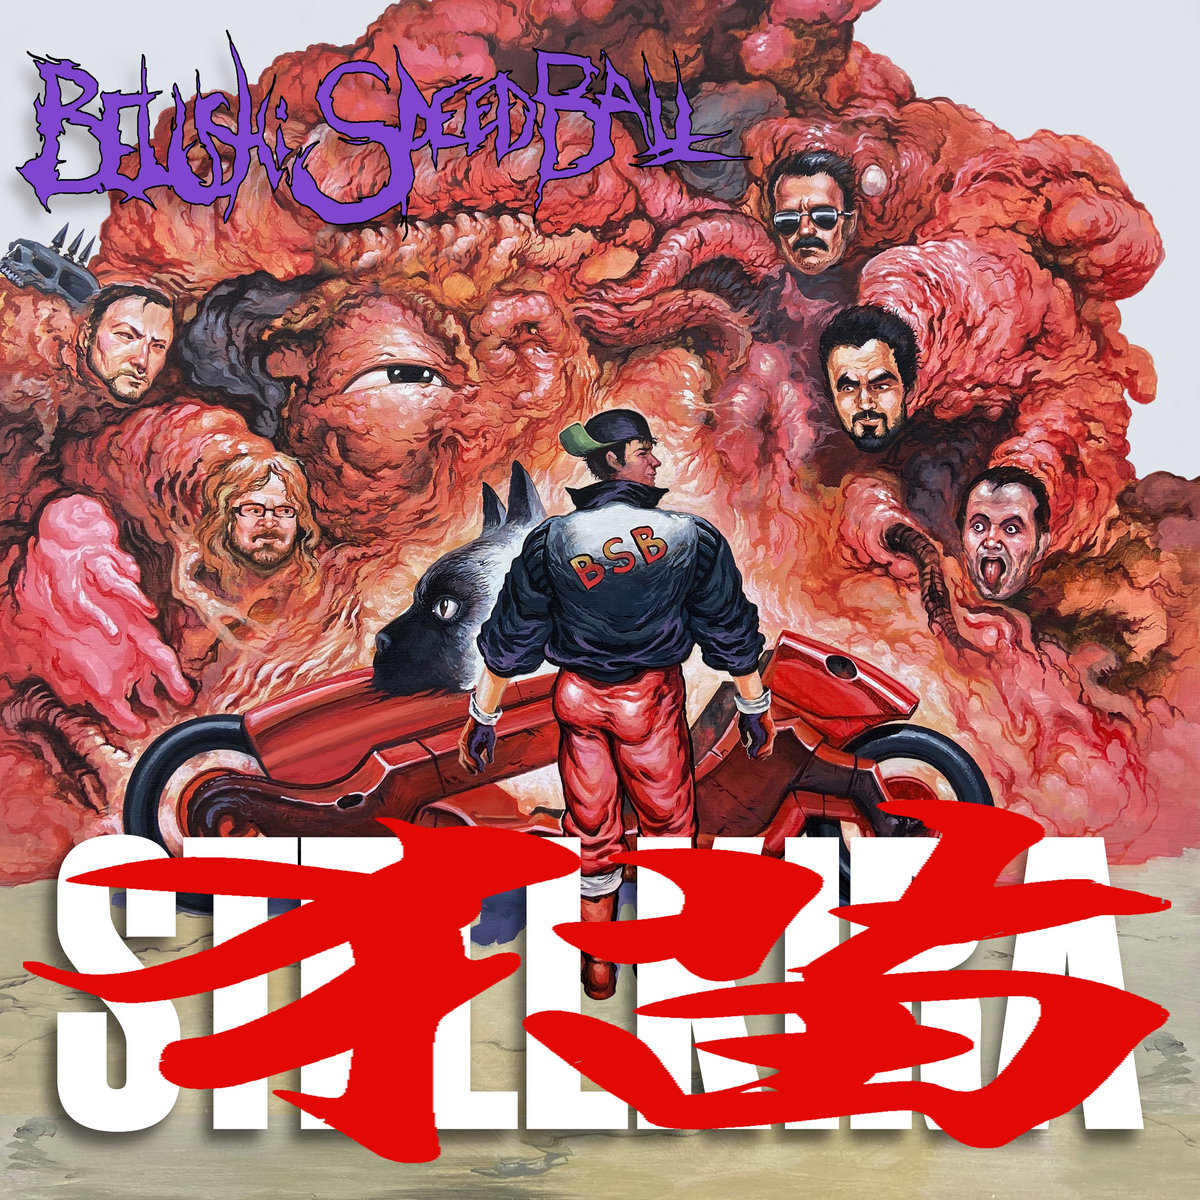 Belushi Speed Ball - Stellkira album cover